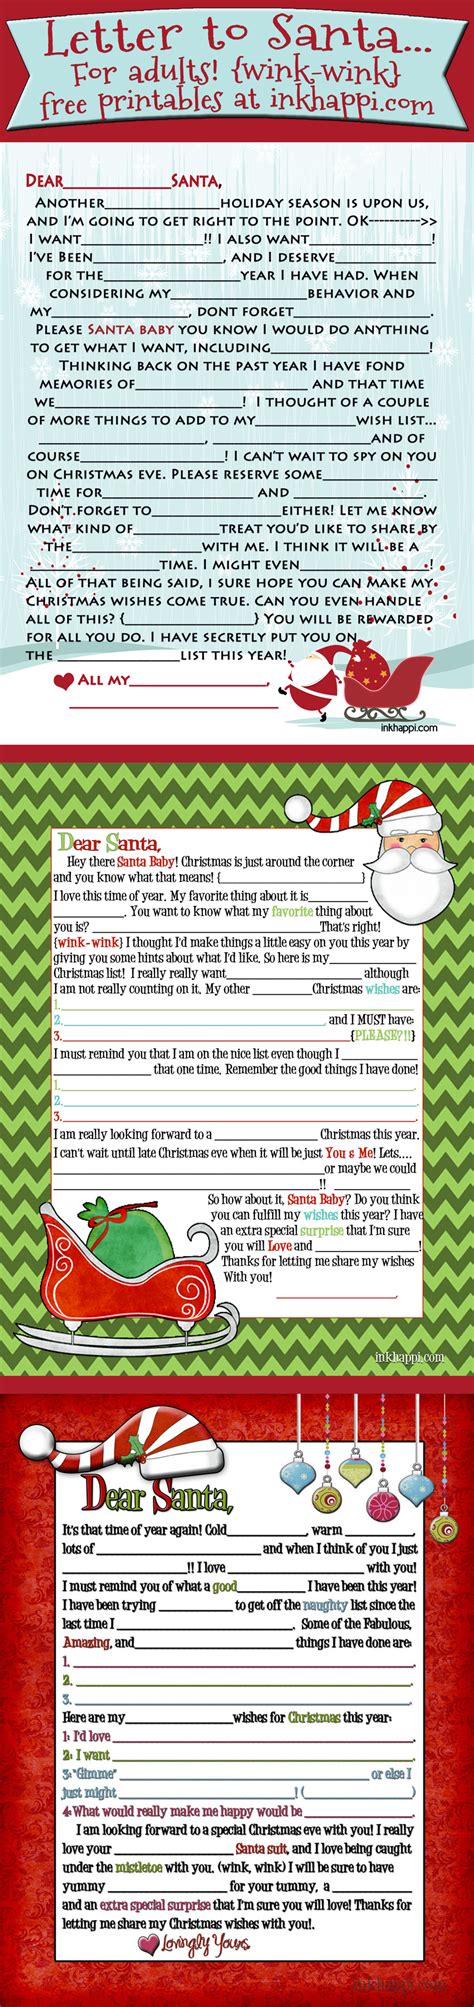 Adult Santa Letter Wink Wink 2014 Version Is Here